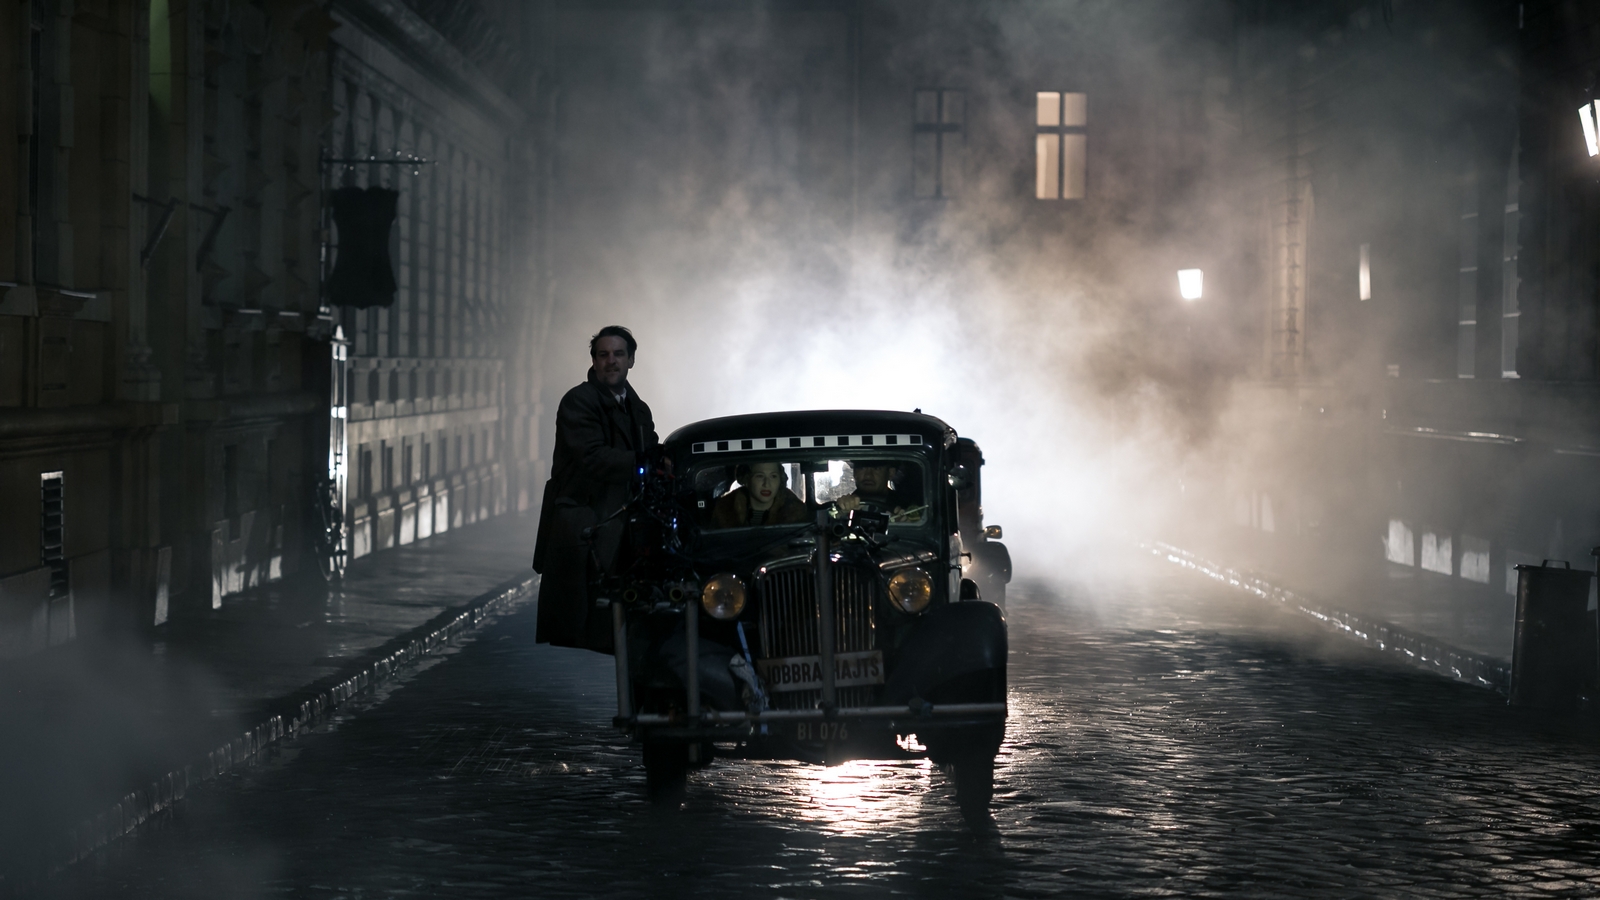 Időutazás a 30-as évekbe és egy rejtélyes bűneset – megnéztük a Budapest Noirt